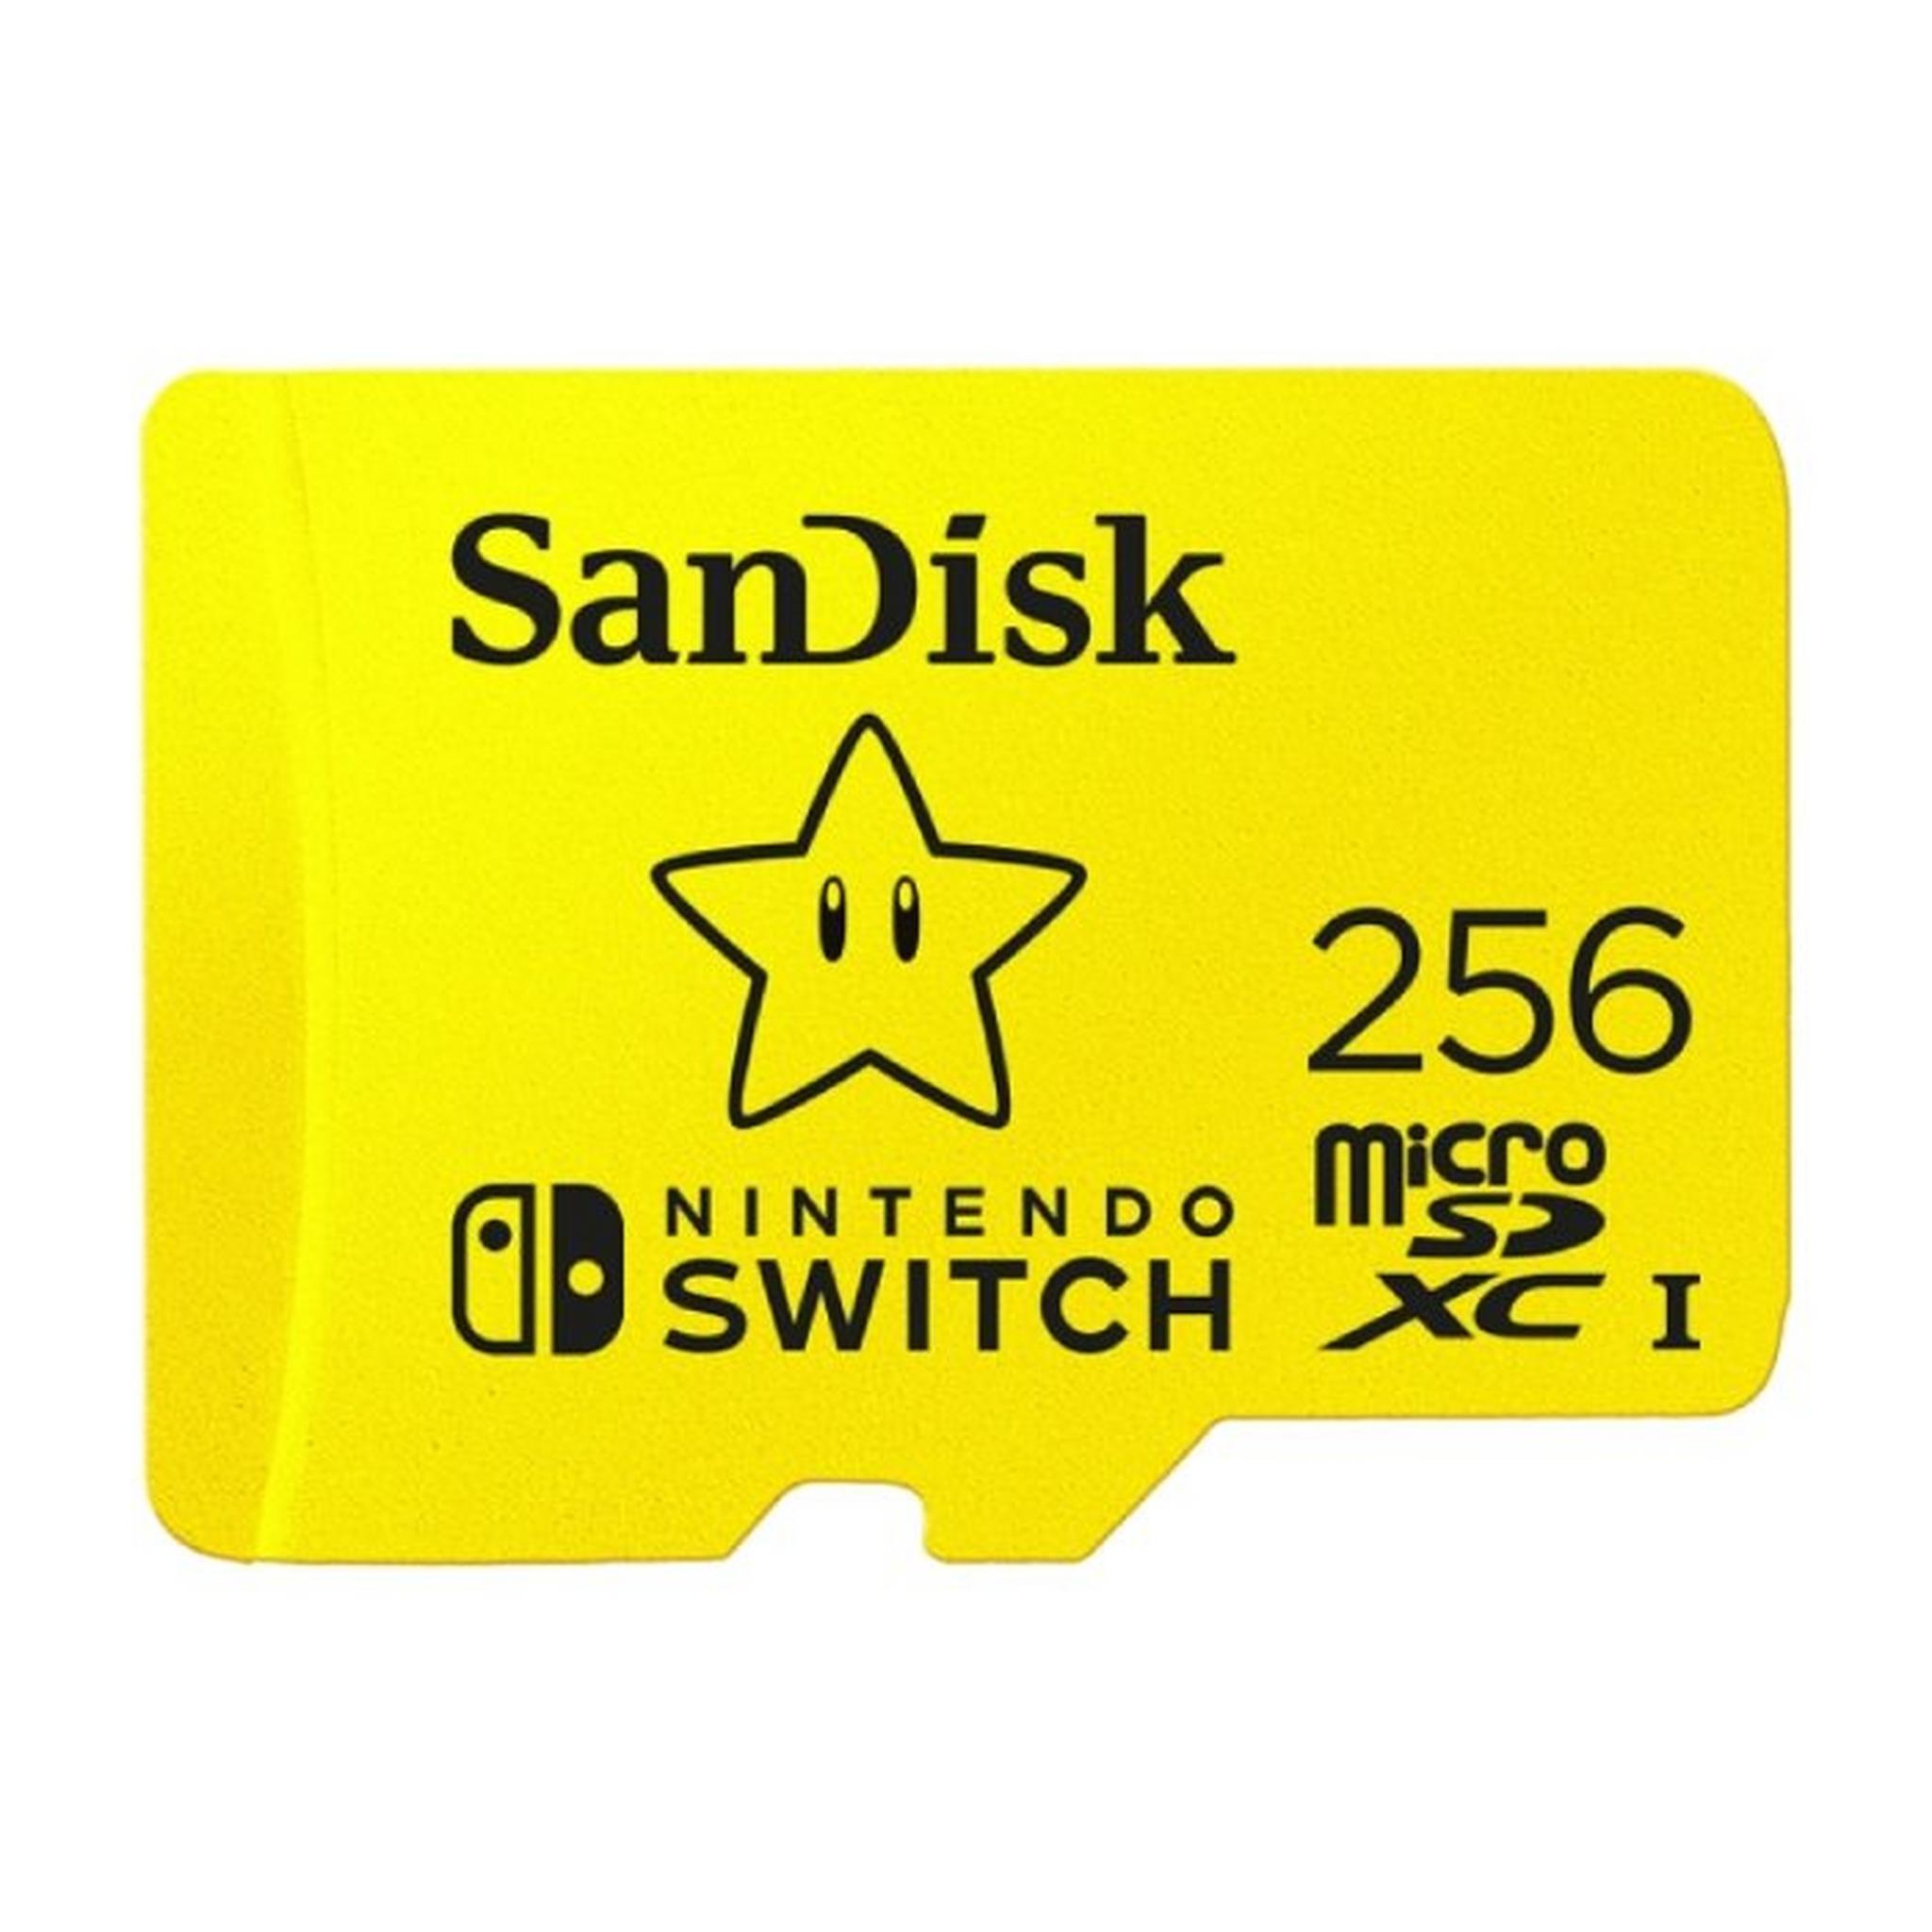 بطاقة ذاكرة UHS-I ميكرو SDXC بسعة 128 جيجابايت لنينتندو سويتش من سانديسك